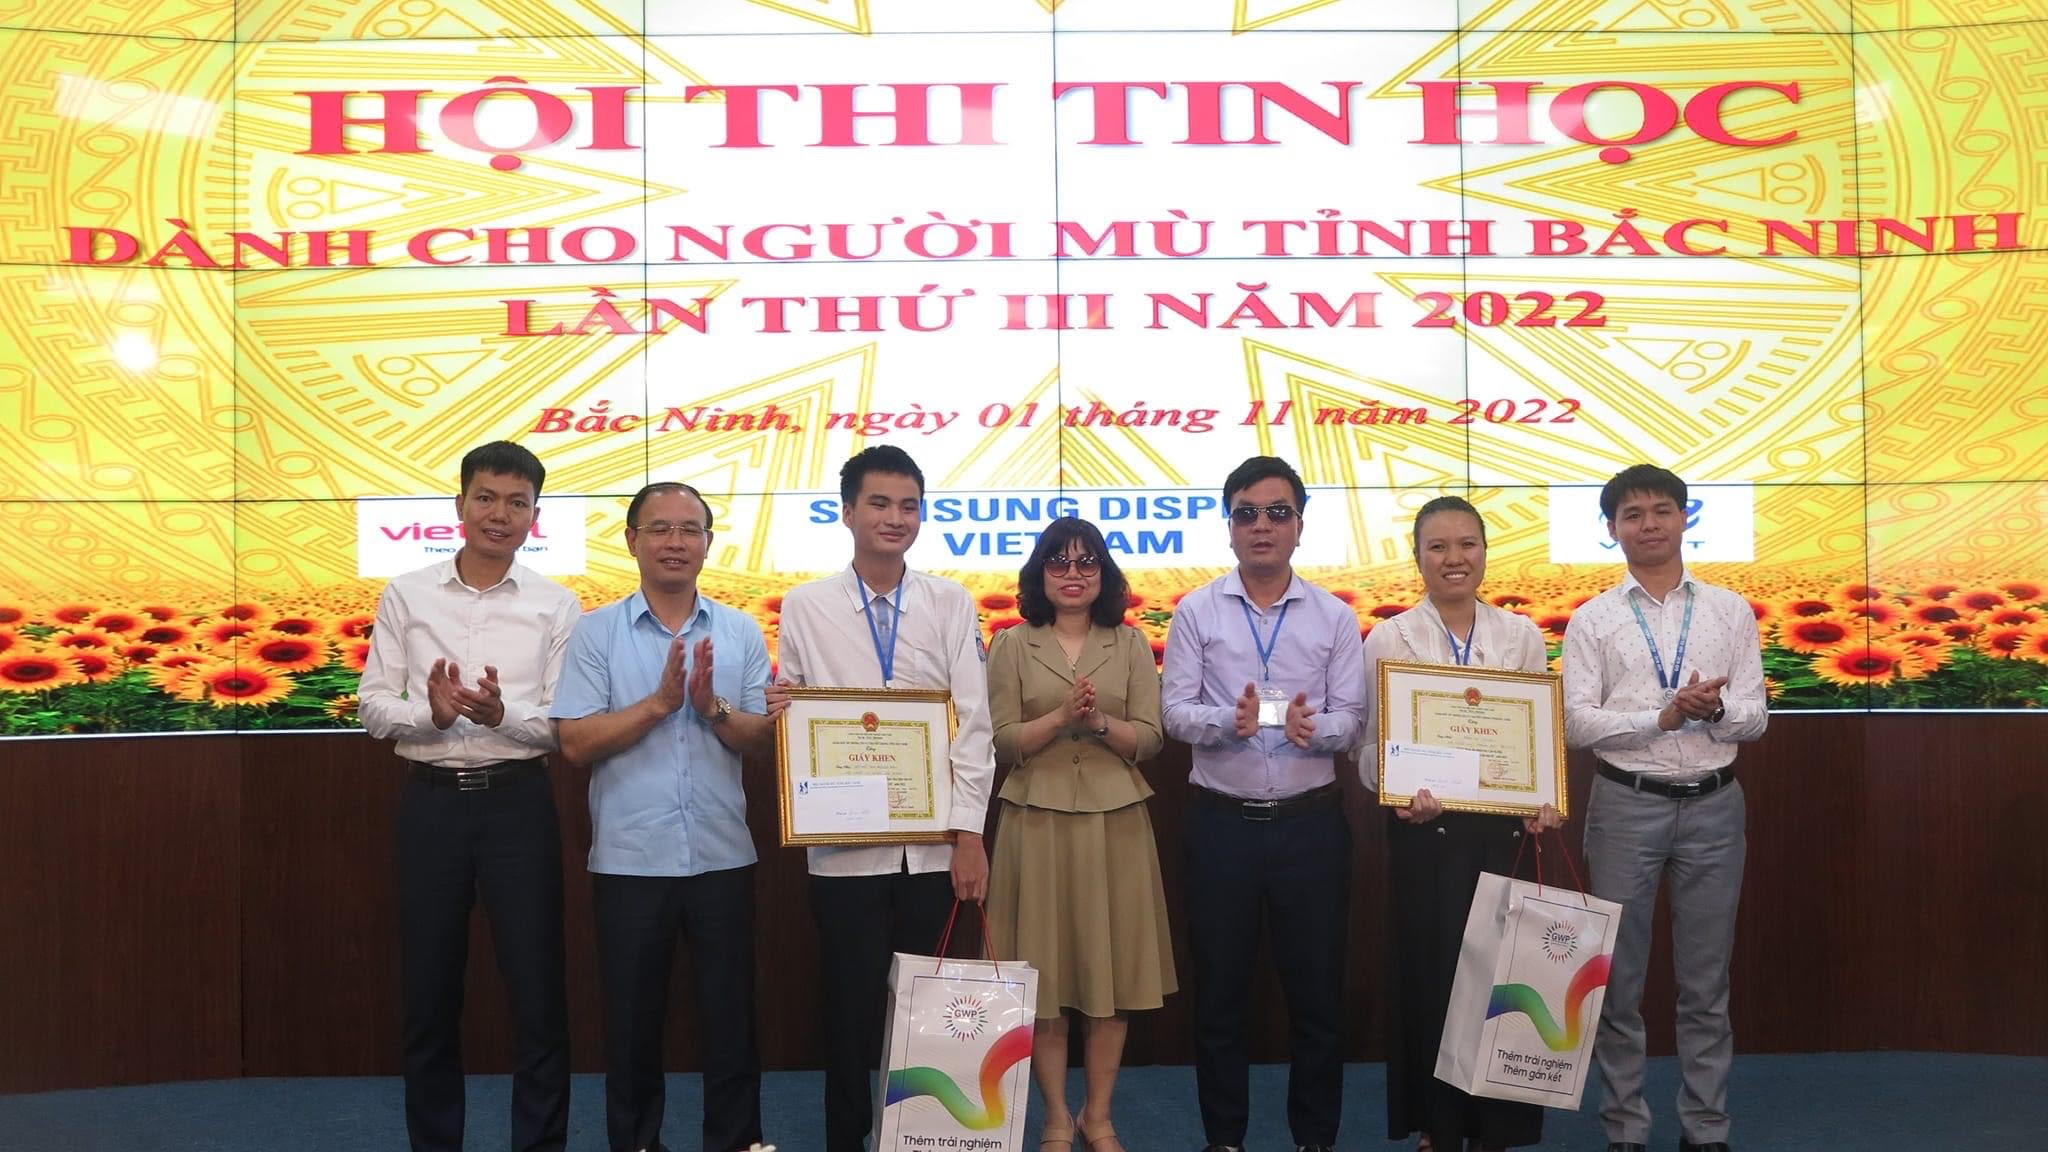 Hội Người mù tỉnh Bắc Ninh tổ chức hội thi tin học lần thứ III 